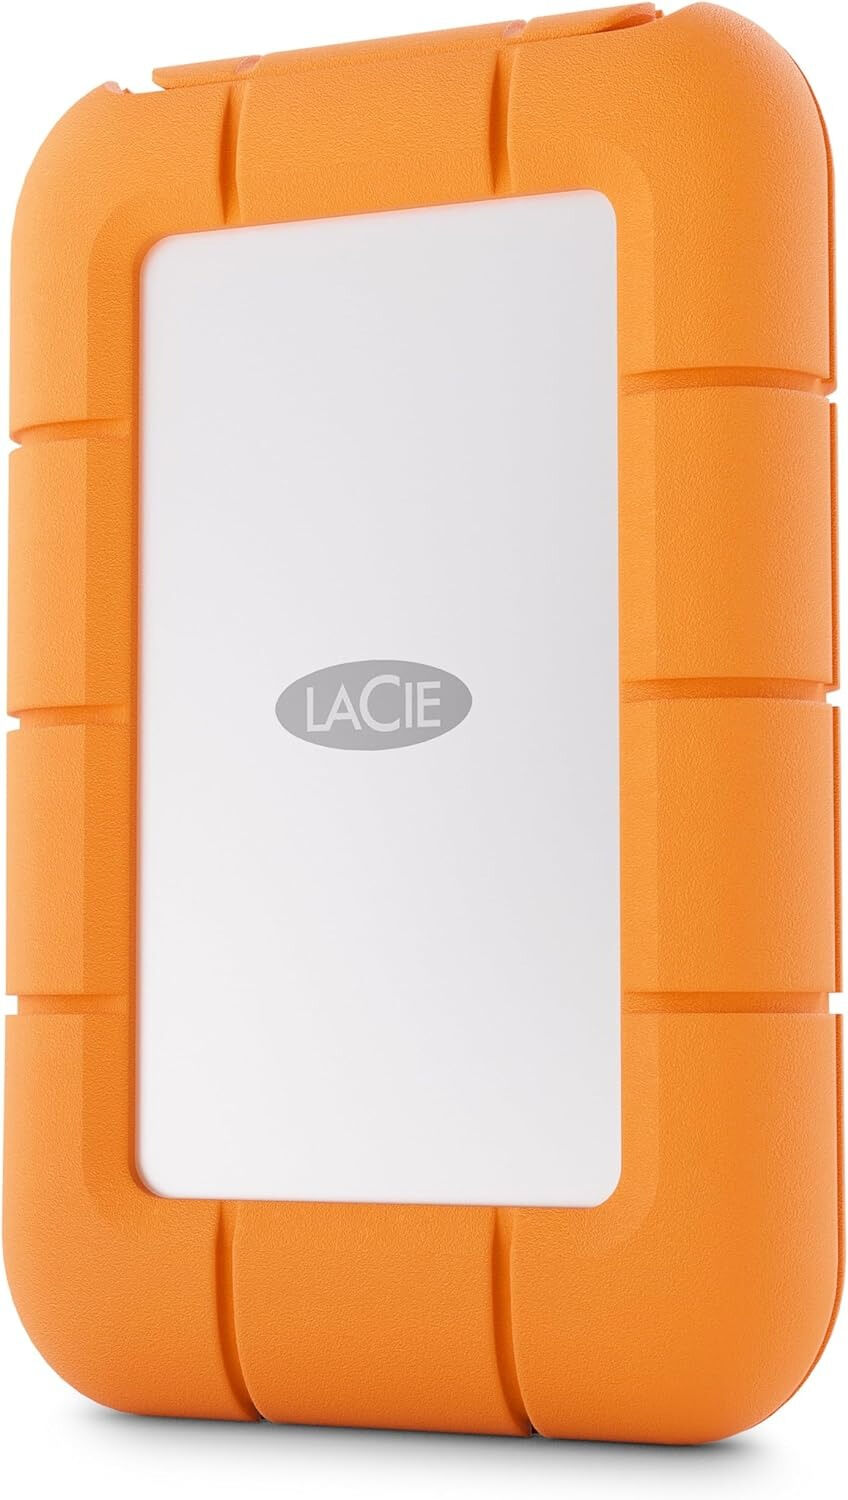 LaCie SSD esterno  STMF2000400 unità esterna a stato solido 2 TB Grigio, Arancione [STMF2000400]